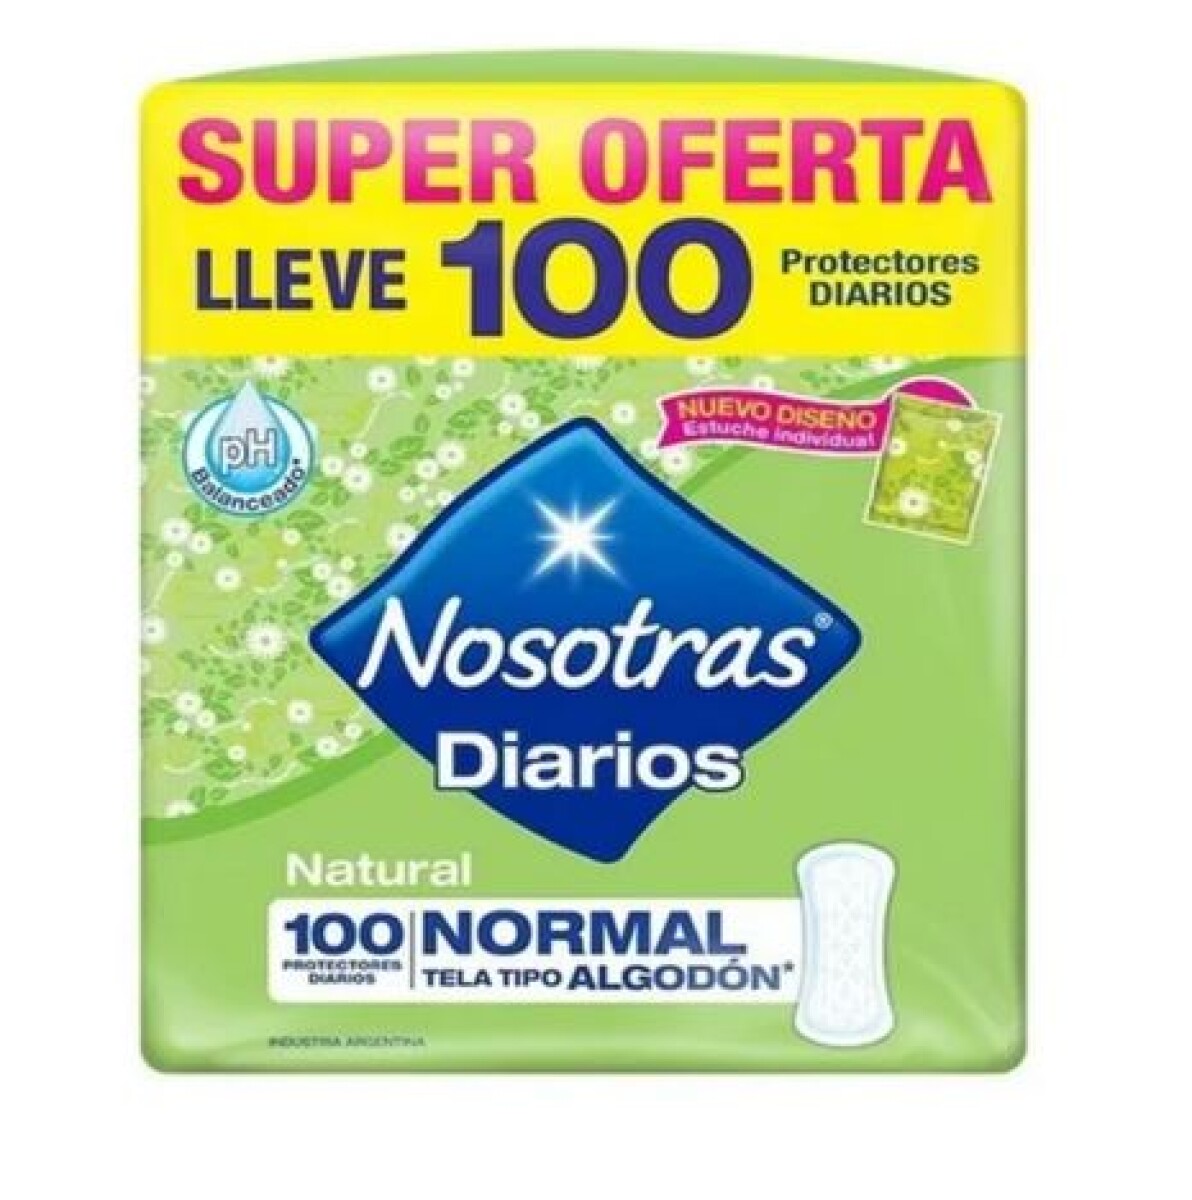 PROTECTORES DIARIOS NOSOTRAS 100 UNIDADES NORMAL 